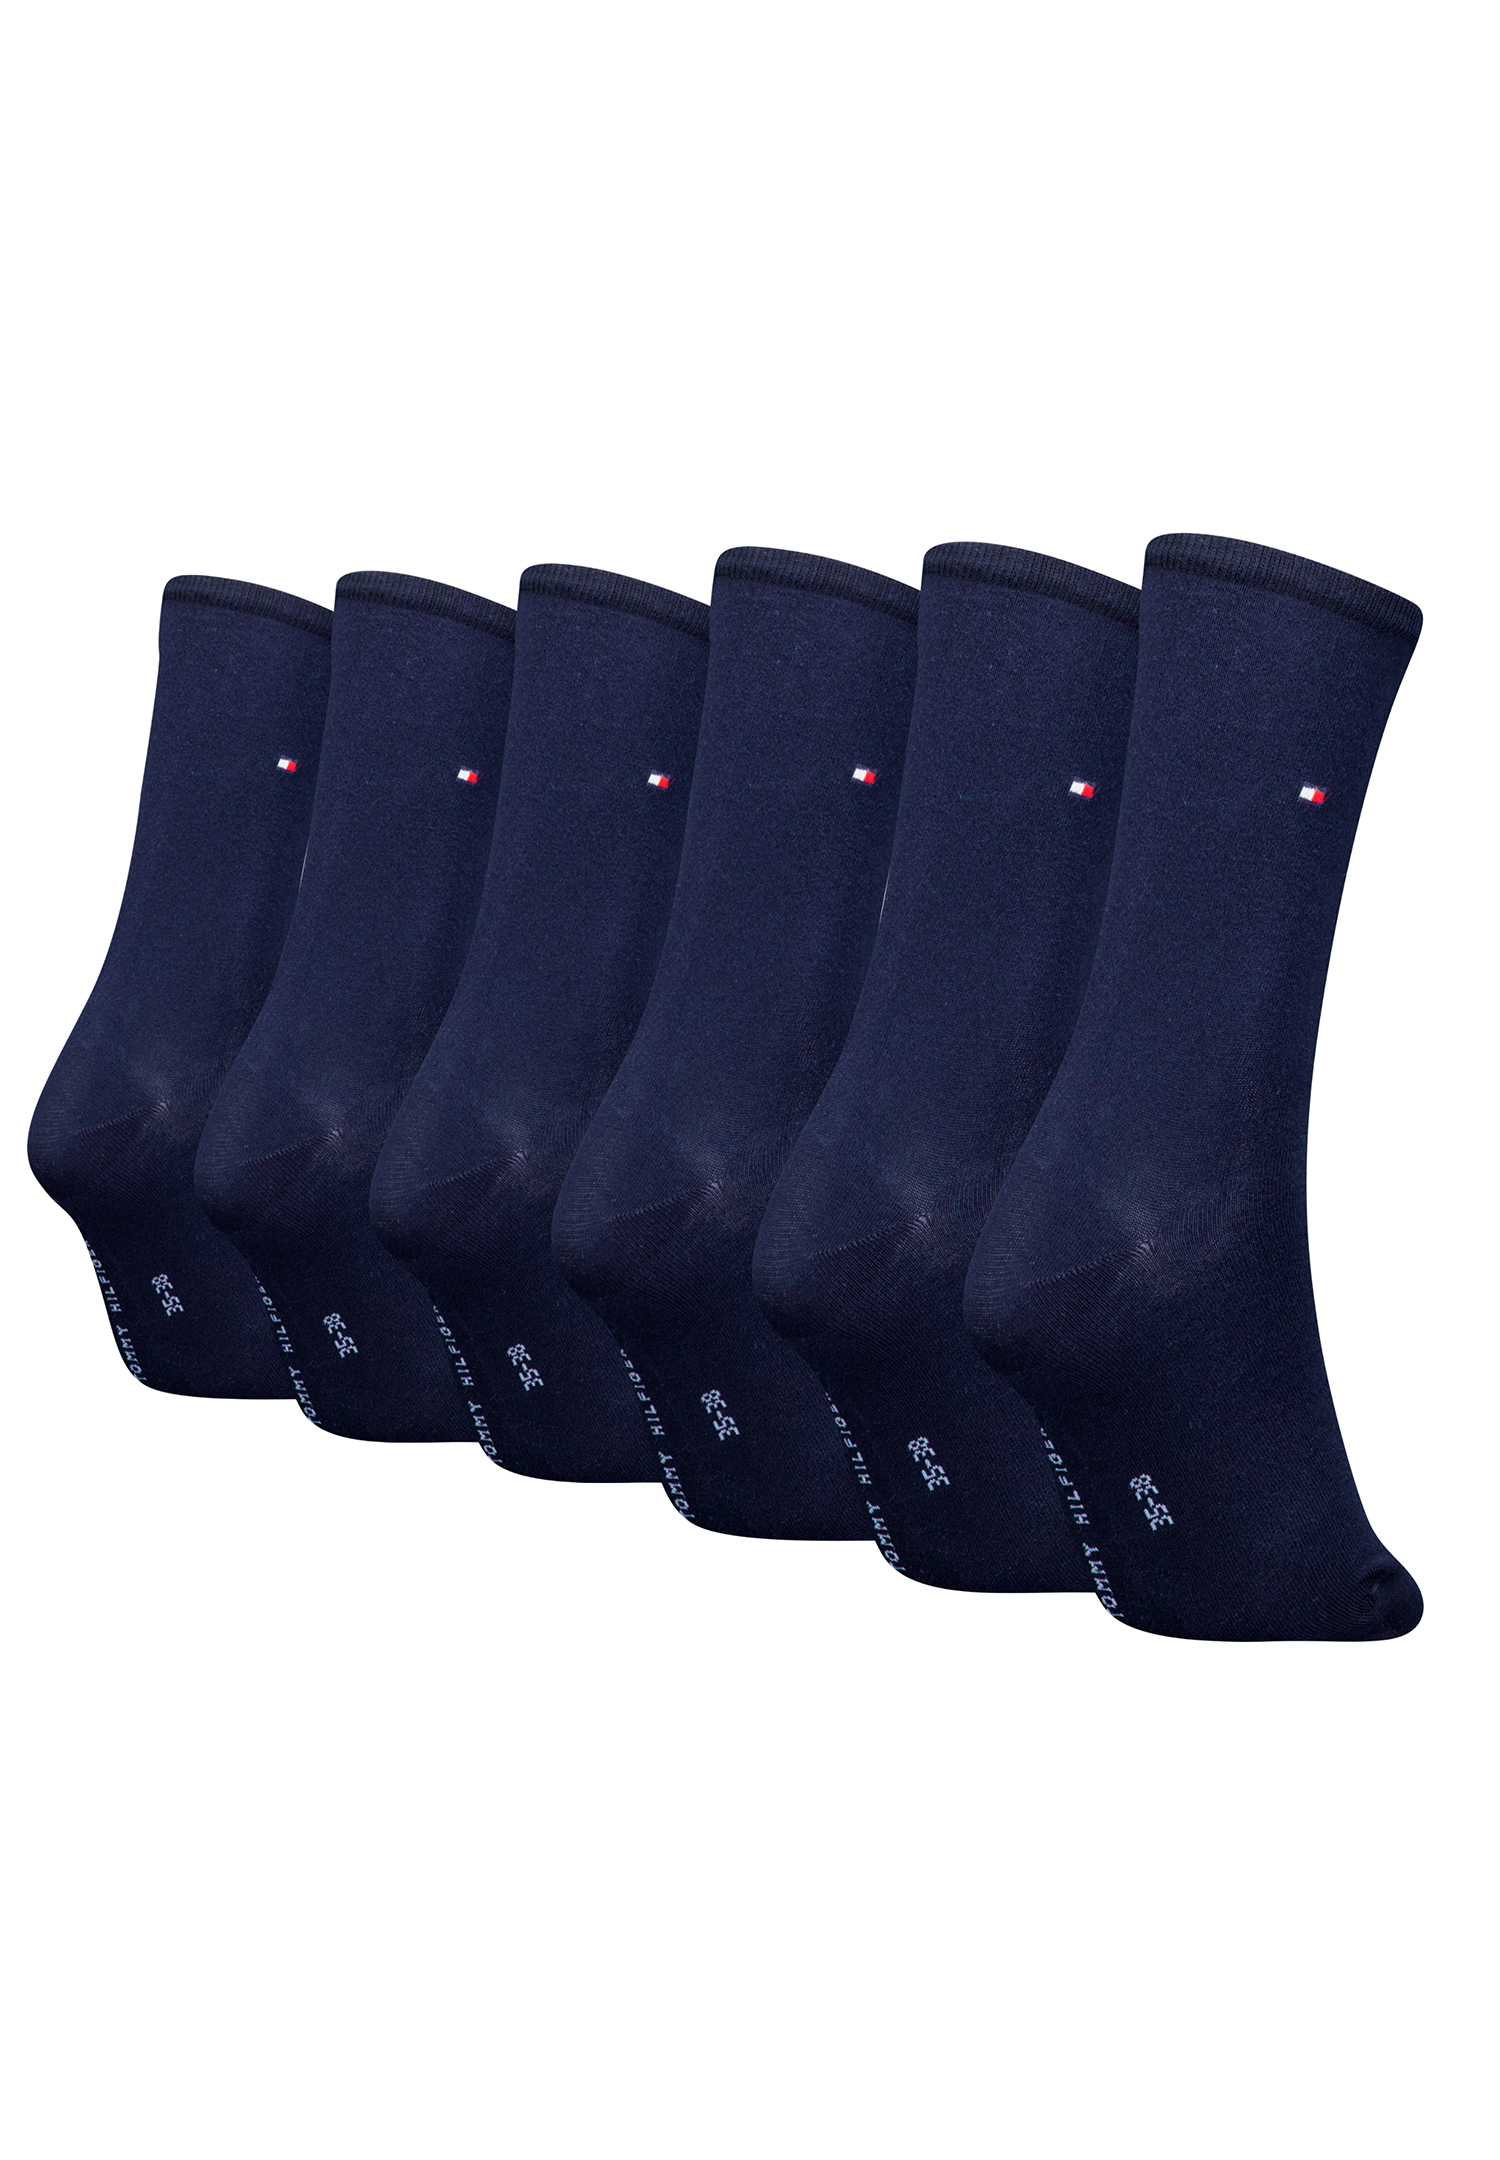 6 Paar Tommy Hilfiger Damen TH Women Socken Gr. 35 - 42 Business Socken 